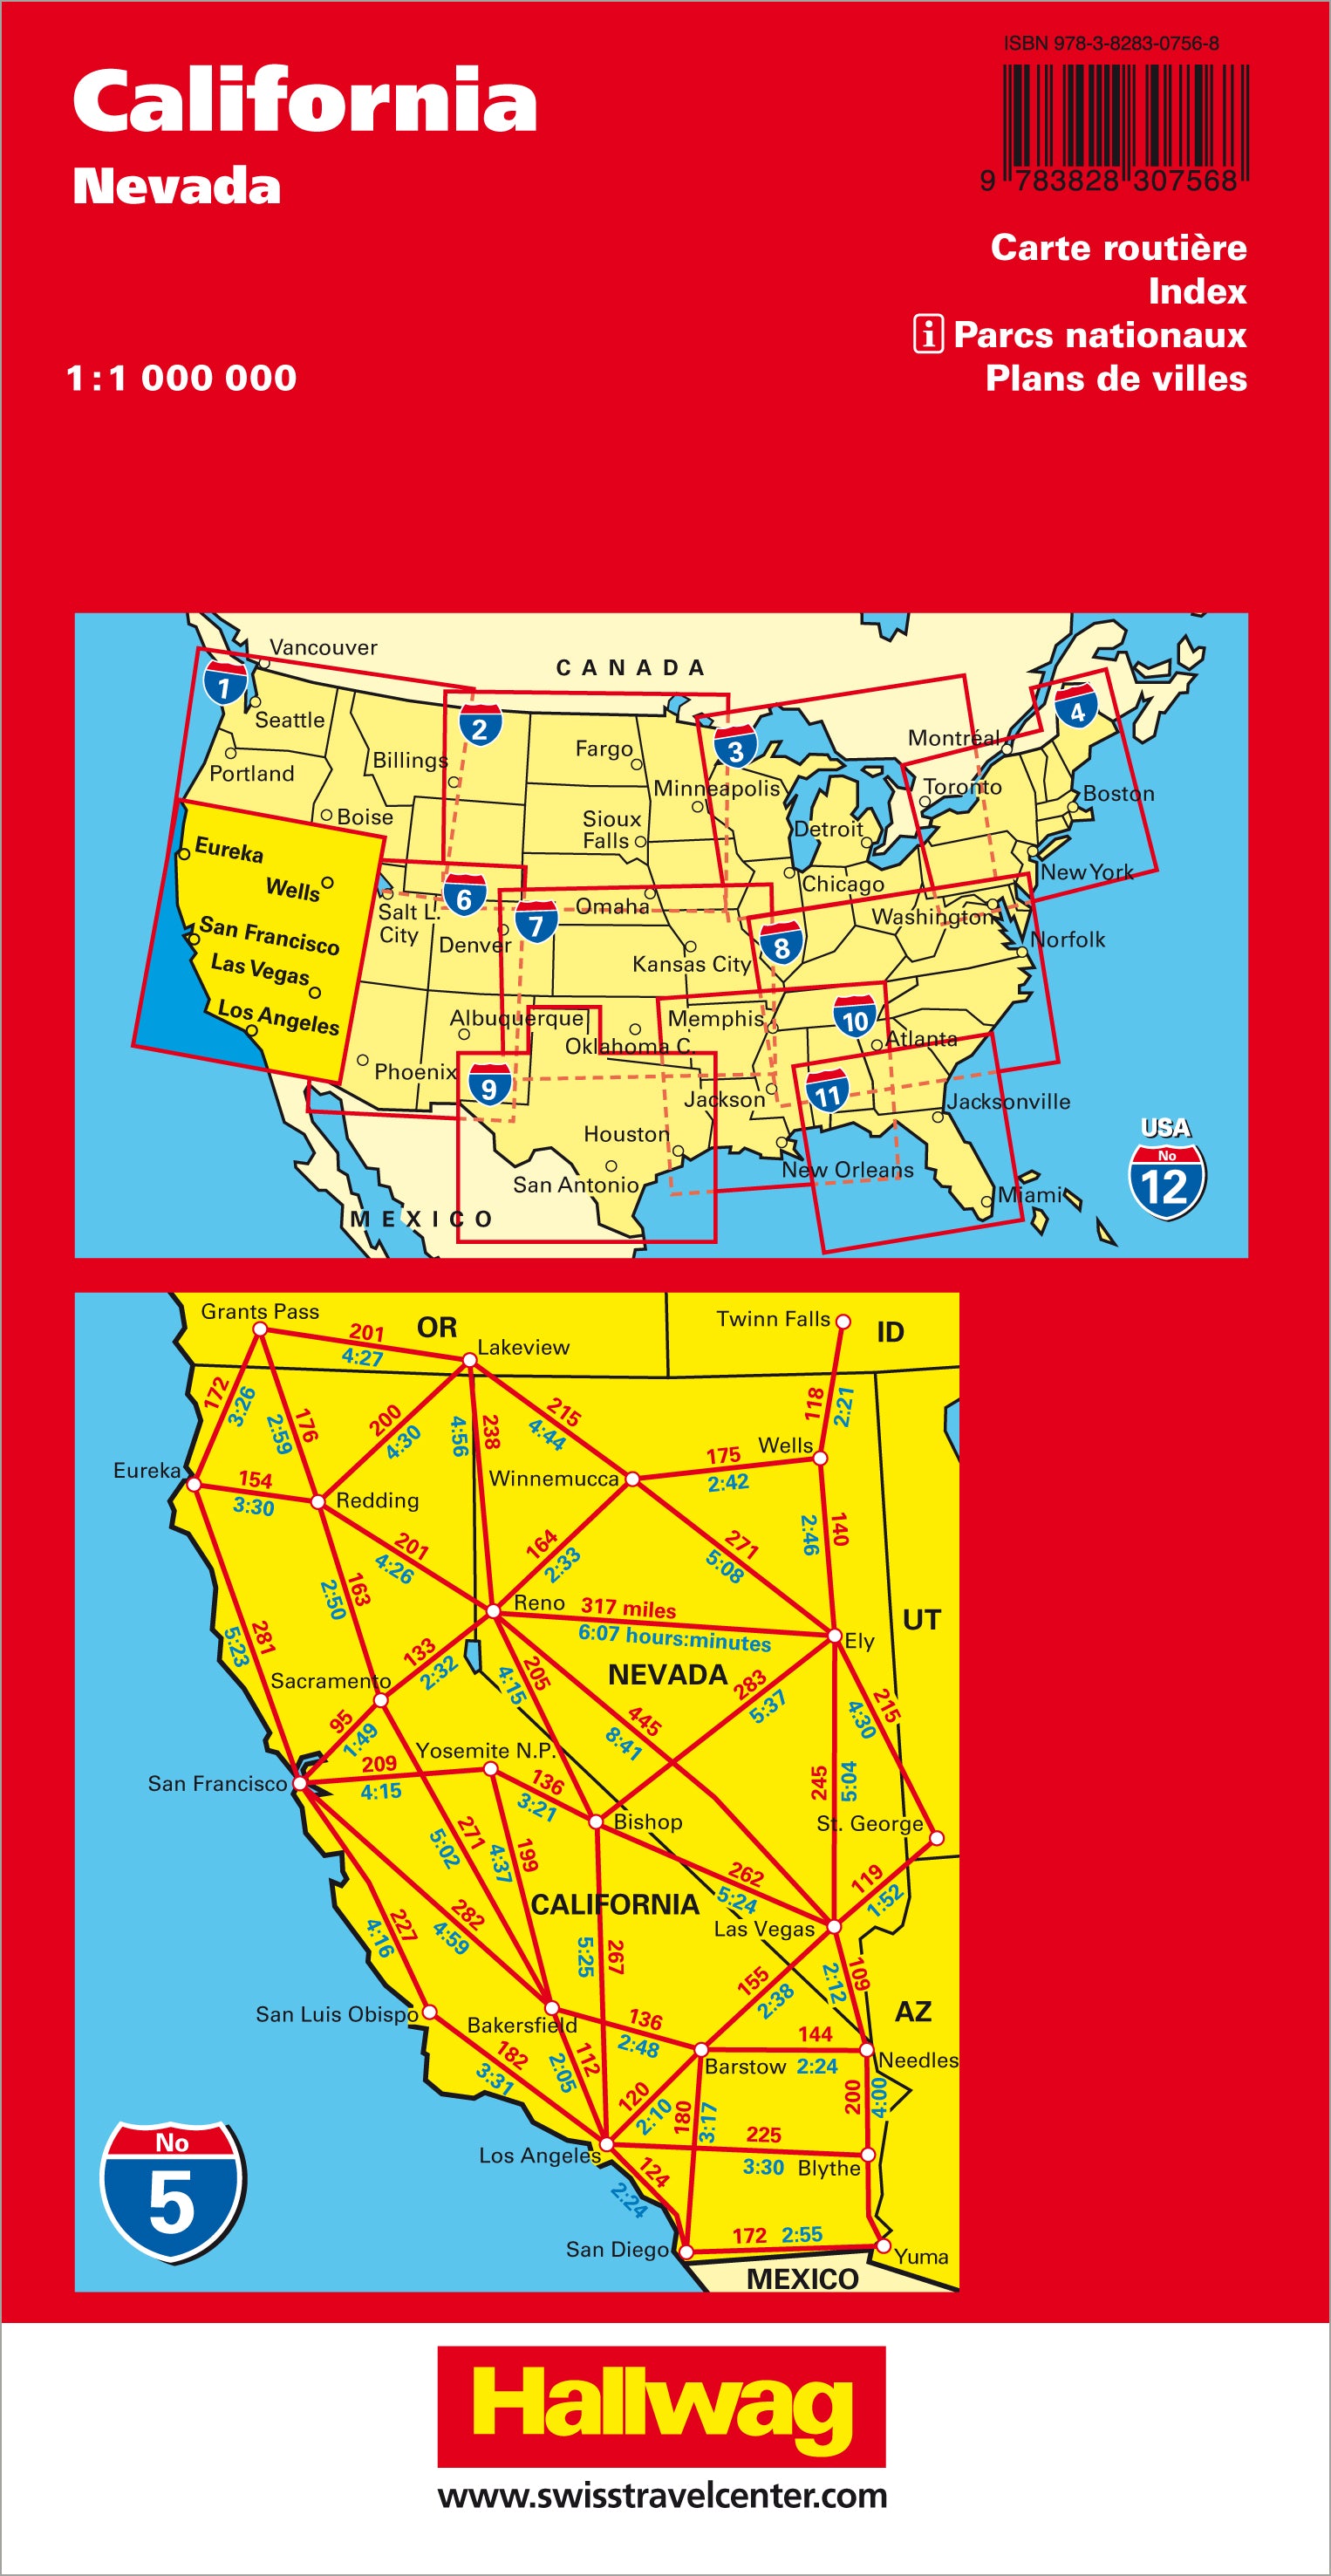 California Nevada-05 USA Road Guide 1.000.000 - Hallwag